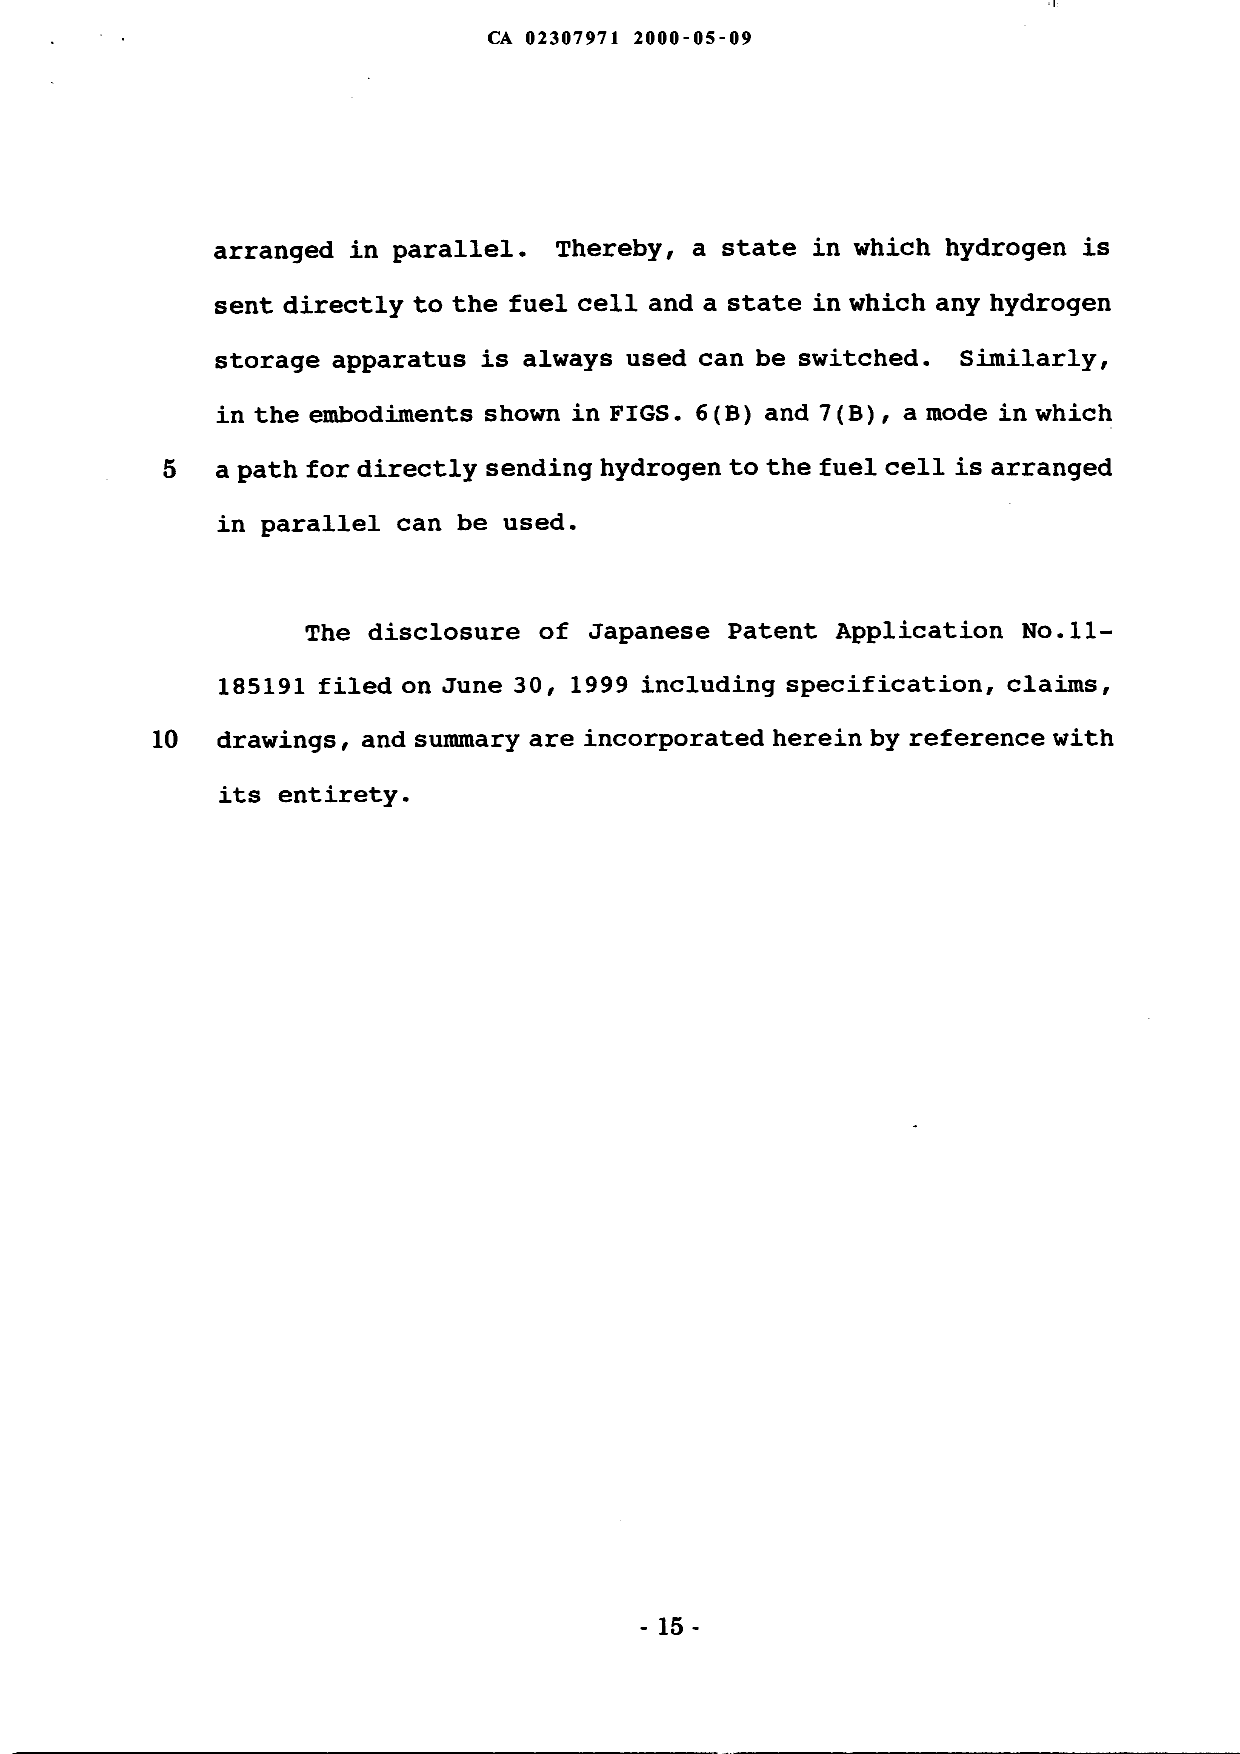 Document de brevet canadien 2307971. Description 19991209. Image 15 de 15